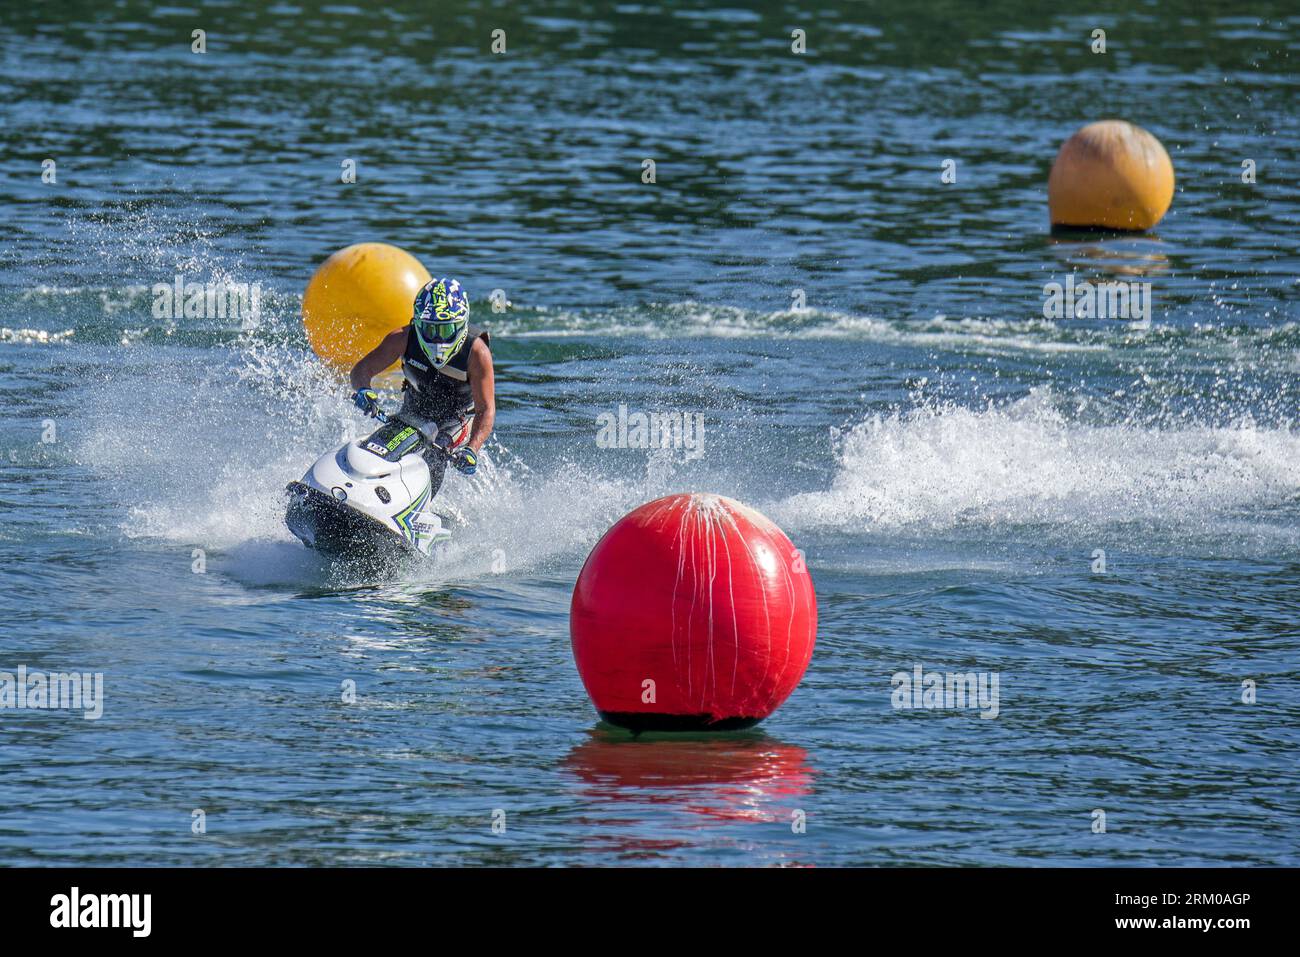 Jet ski / jetski / water scooter / stand-up personal watercraft / PWC rider slaloming along buoys on lake Stock Photo